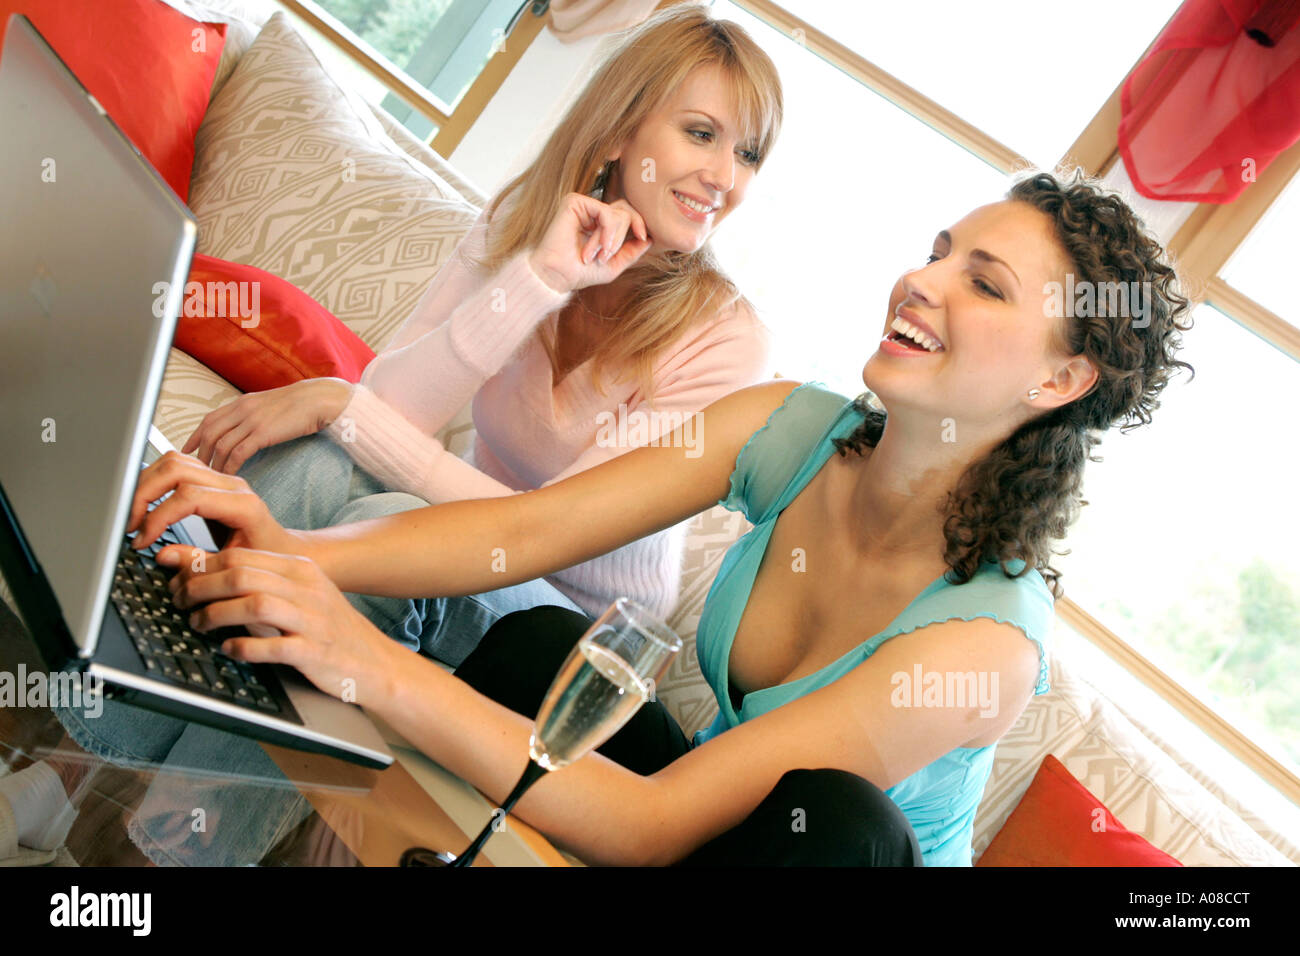 Zwei Frauen Surfen Zusammen Im Internet, zwei Frauen, die gemeinsam im Internet surfen Stockfoto